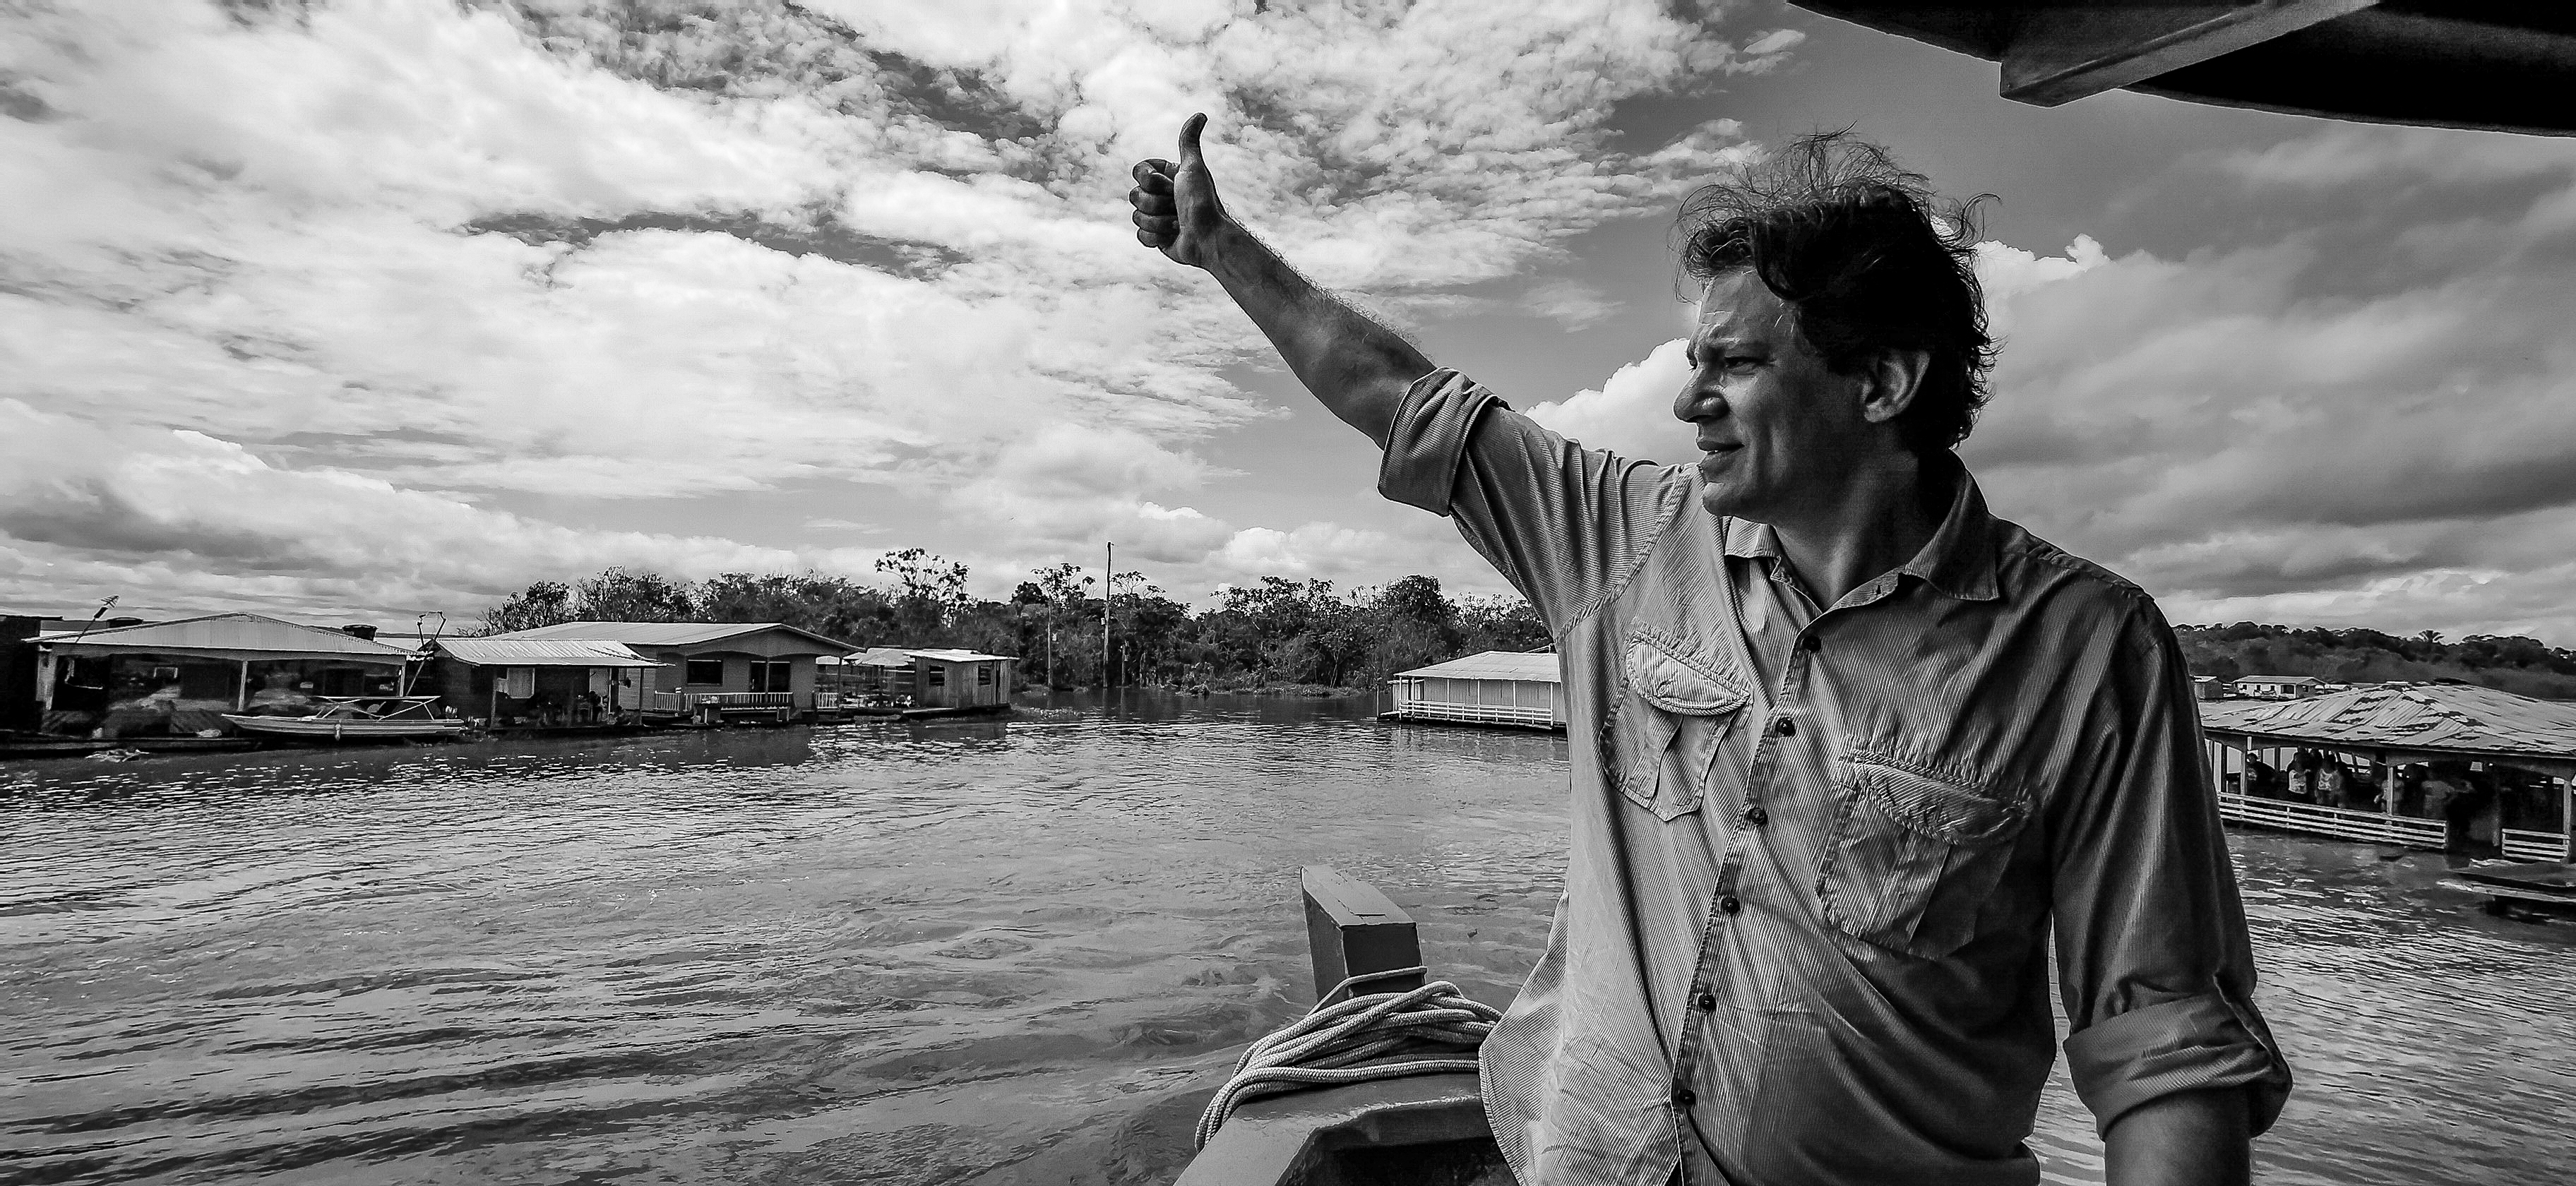 Galeria: Caravana Lula Livre com Fernando Haddad chega ao Amazonas